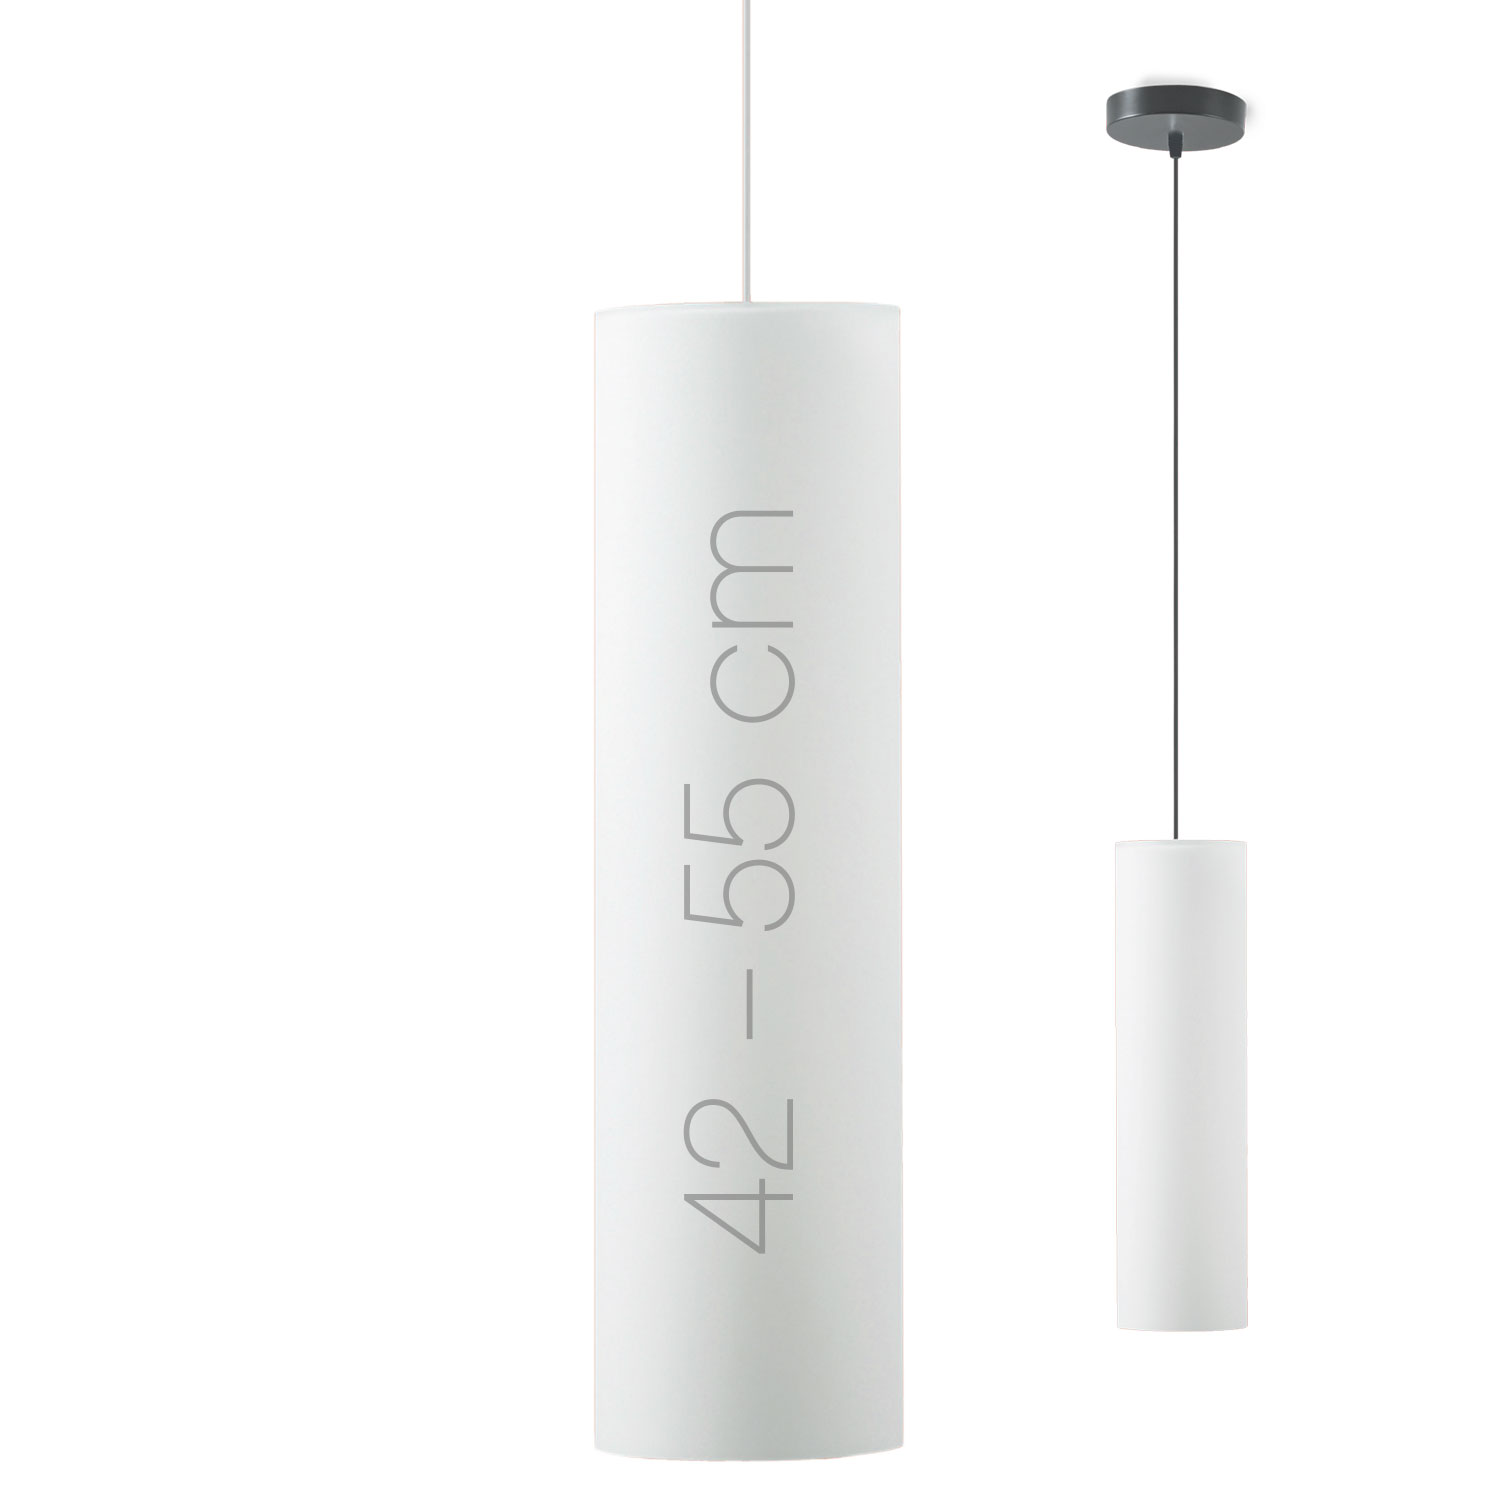 Lange Zylinder-Pendelleuchte KIMO aus Opalglas bis 55 cm Höhe: Längliche Zylinder-Hängeleuchte aus hochwertigem Opalglas, 42 bzw. 55 cm lang